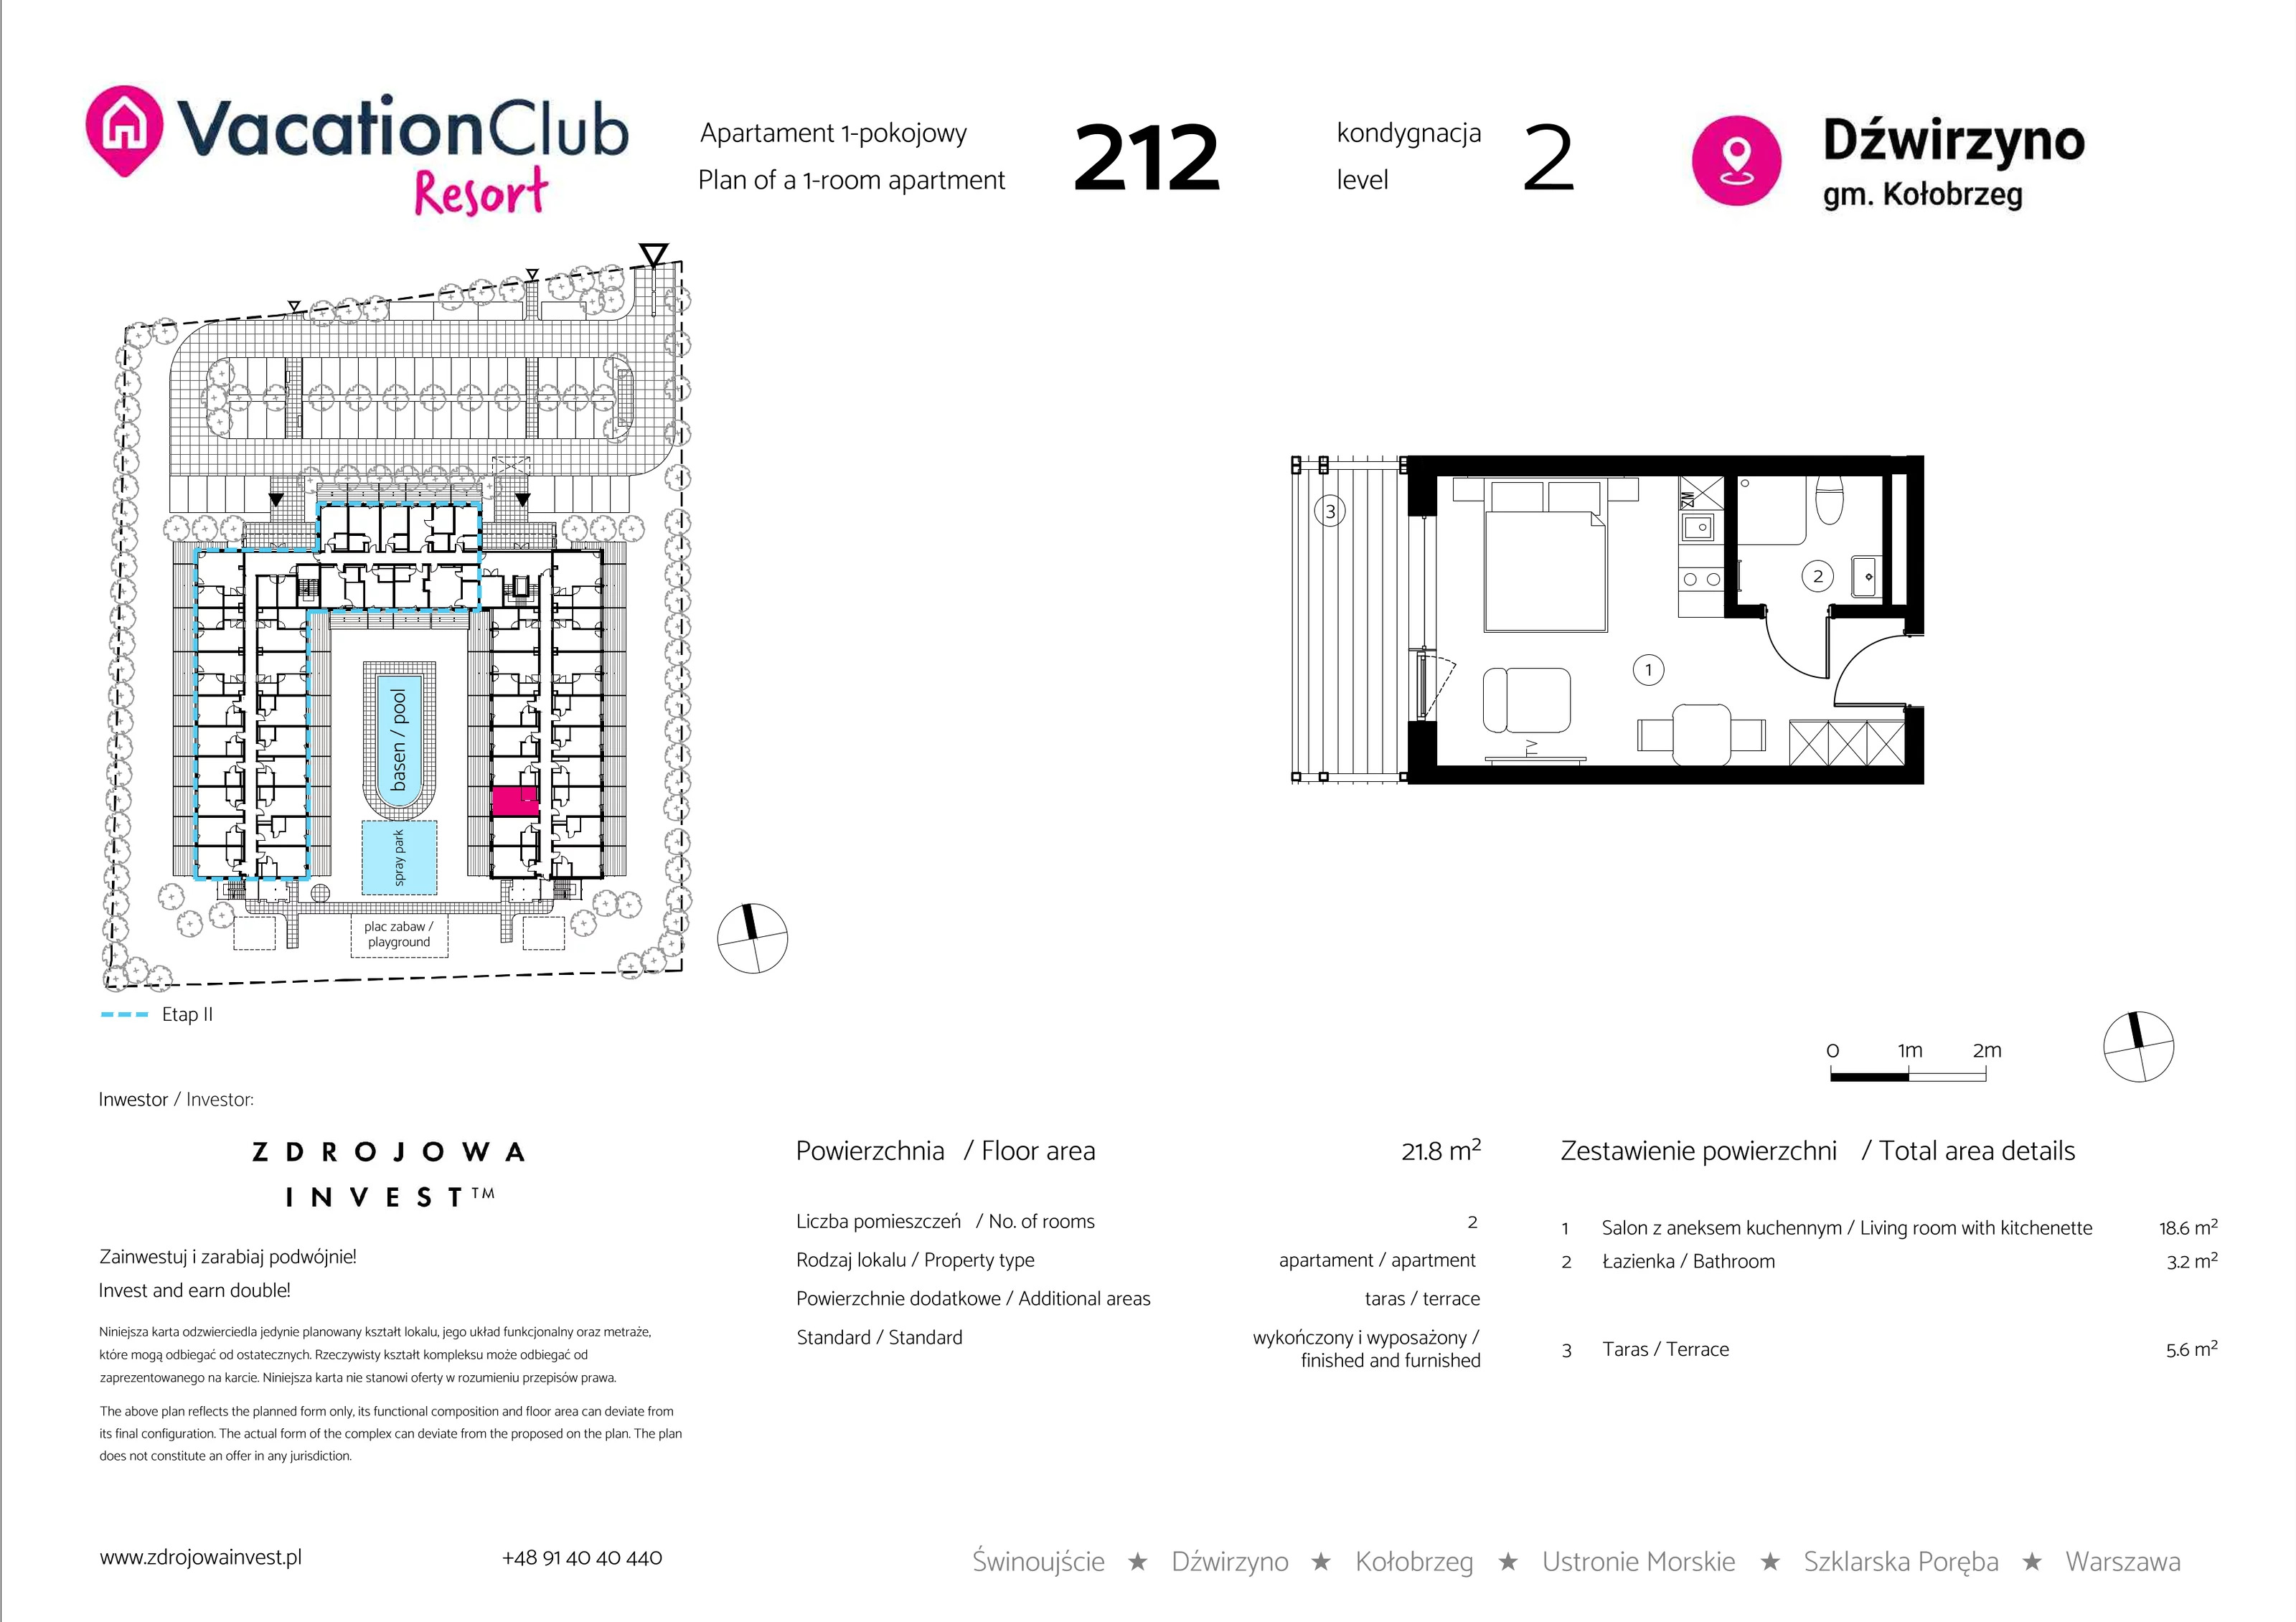 Apartament 21,80 m², piętro 1, oferta nr 212, Vacation Club Resort - apartamenty wakacyjne, Dźwirzyno, ul. Wczasowa 8